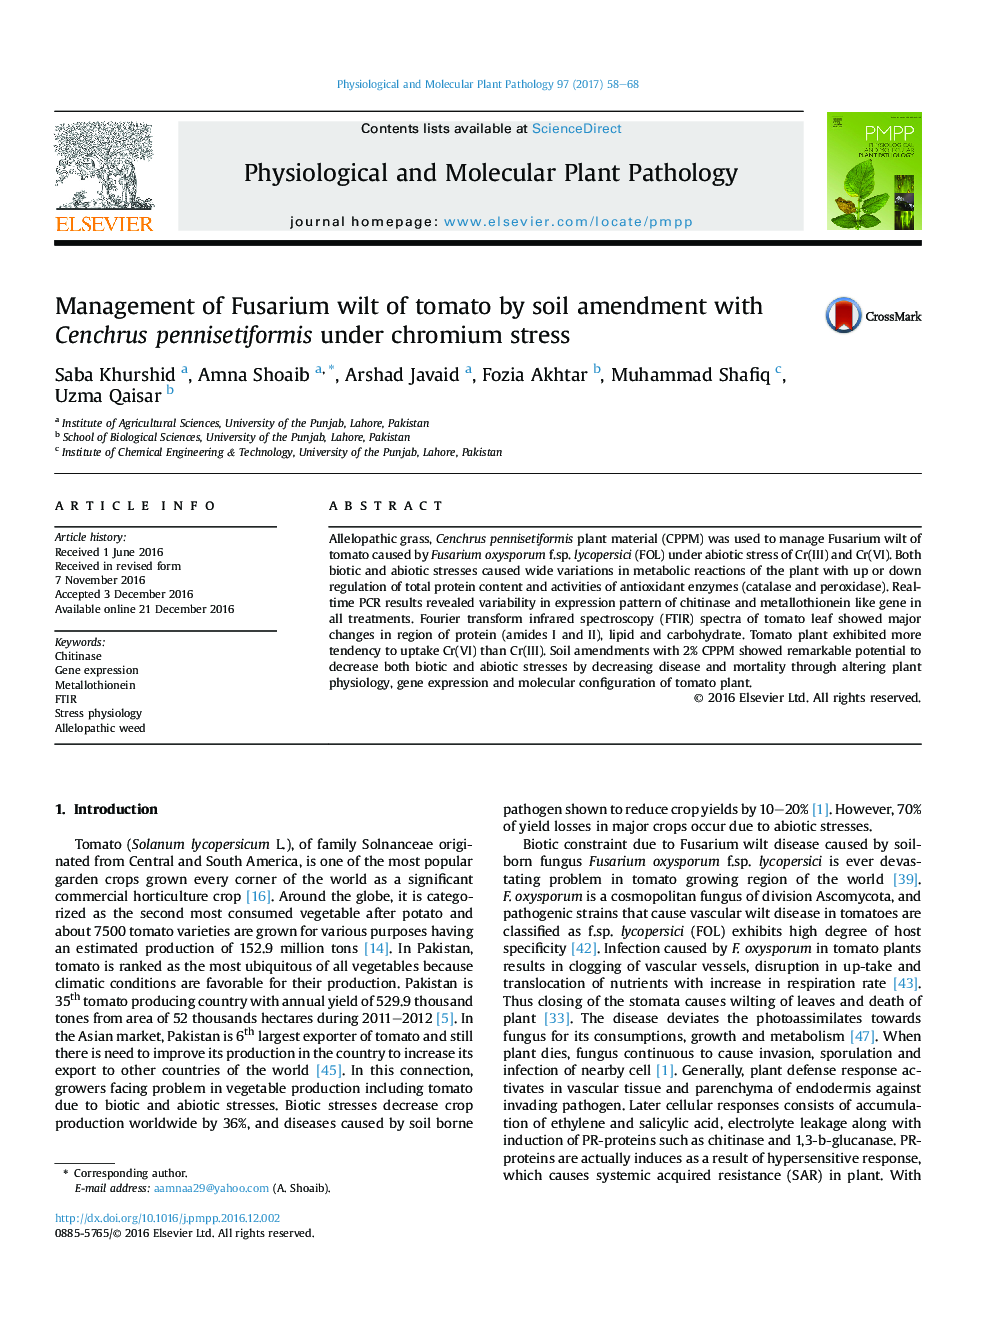 Management of Fusarium wilt of tomato by soil amendment with Cenchrus pennisetiformis under chromium stress